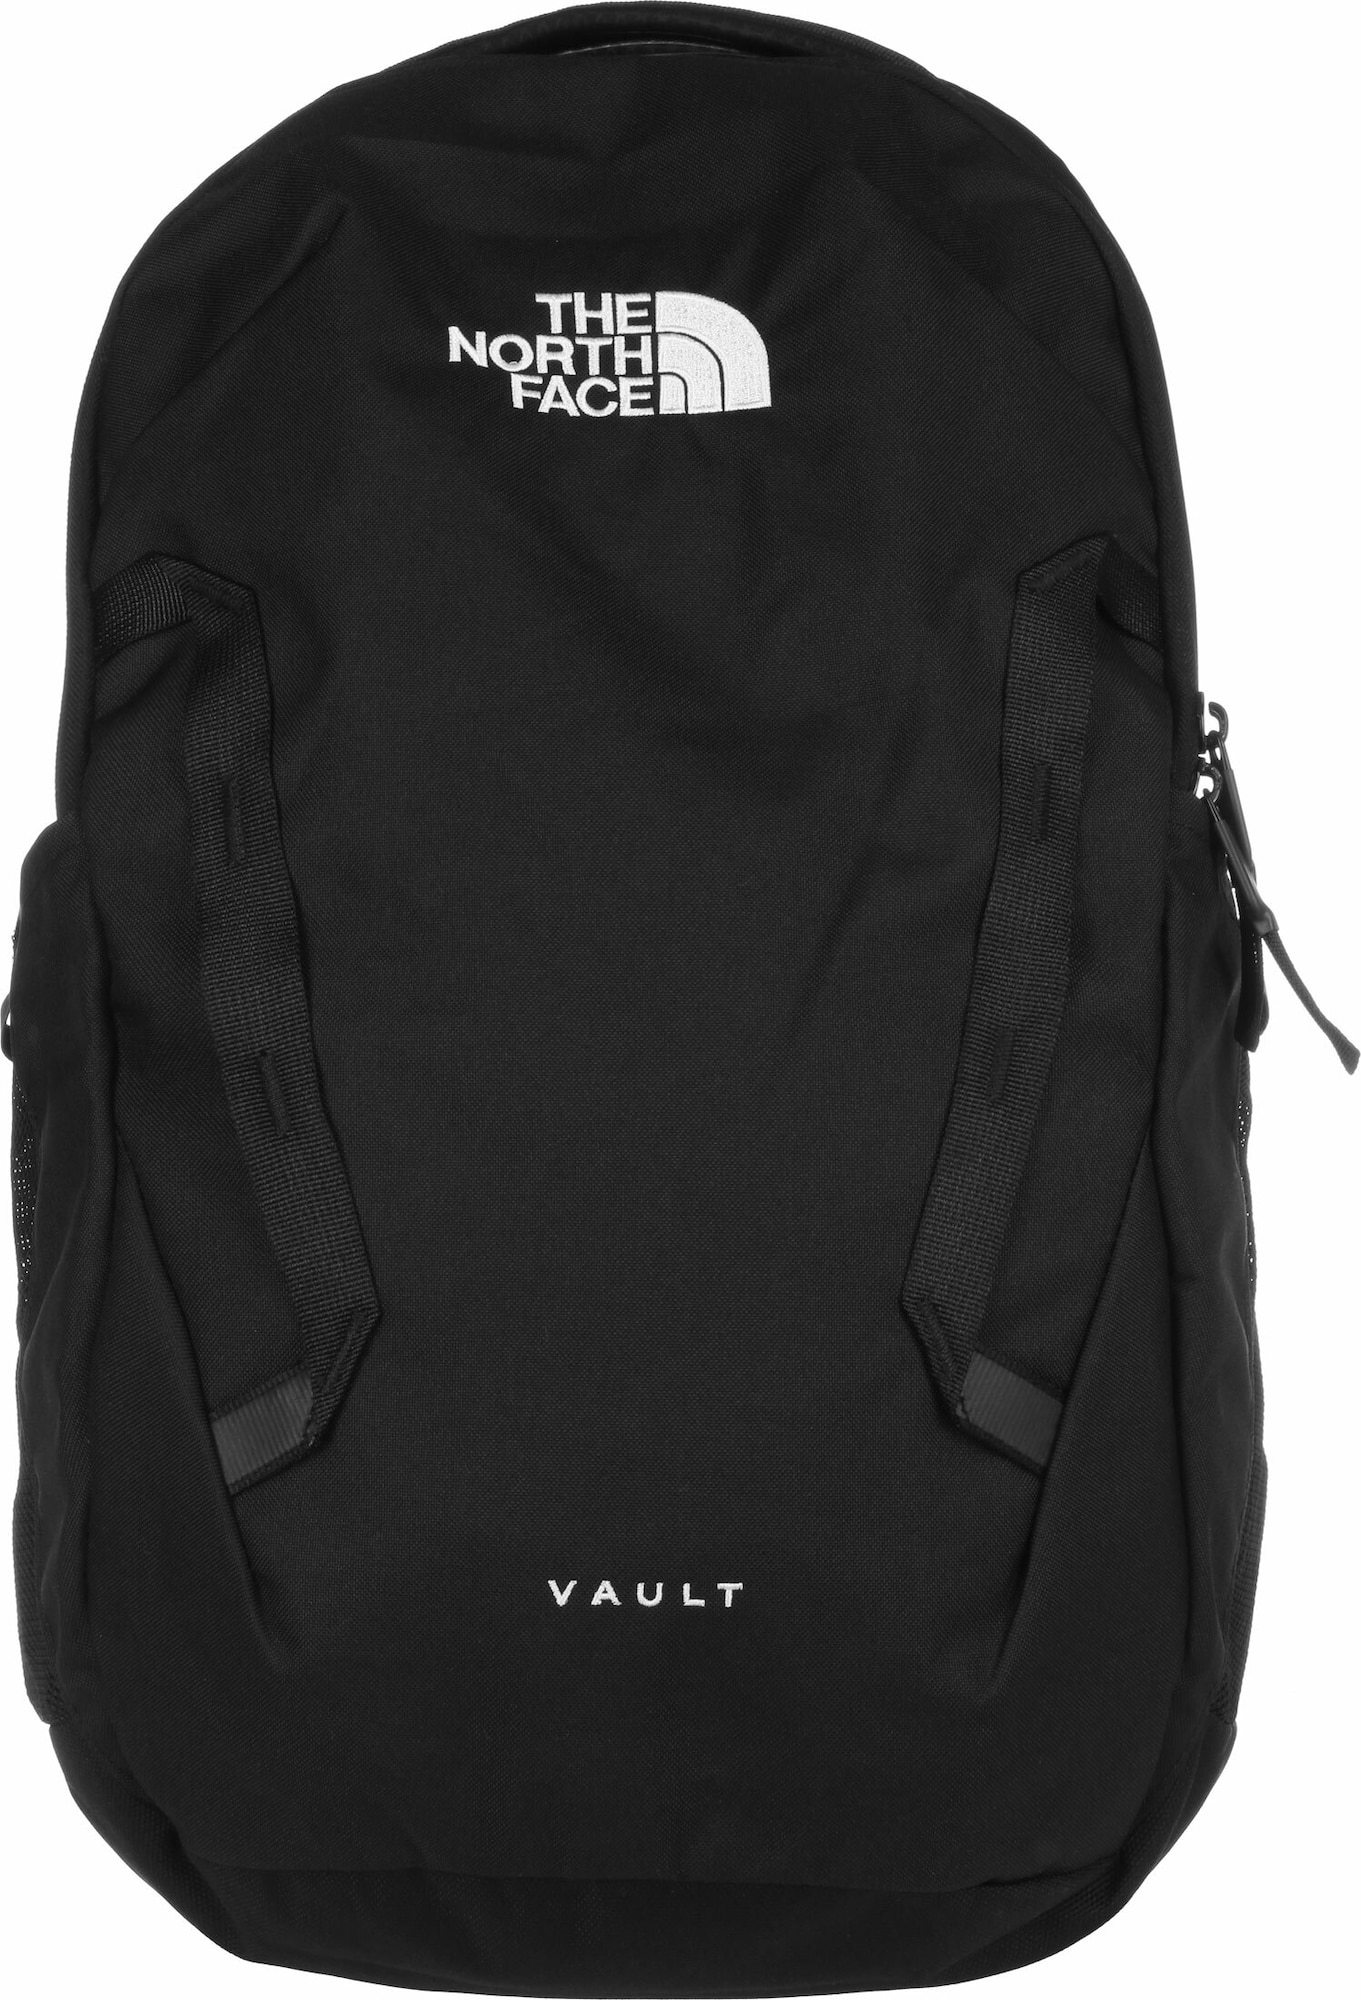 THE NORTH FACE Sportovní batoh 'Vault' černá / bílá